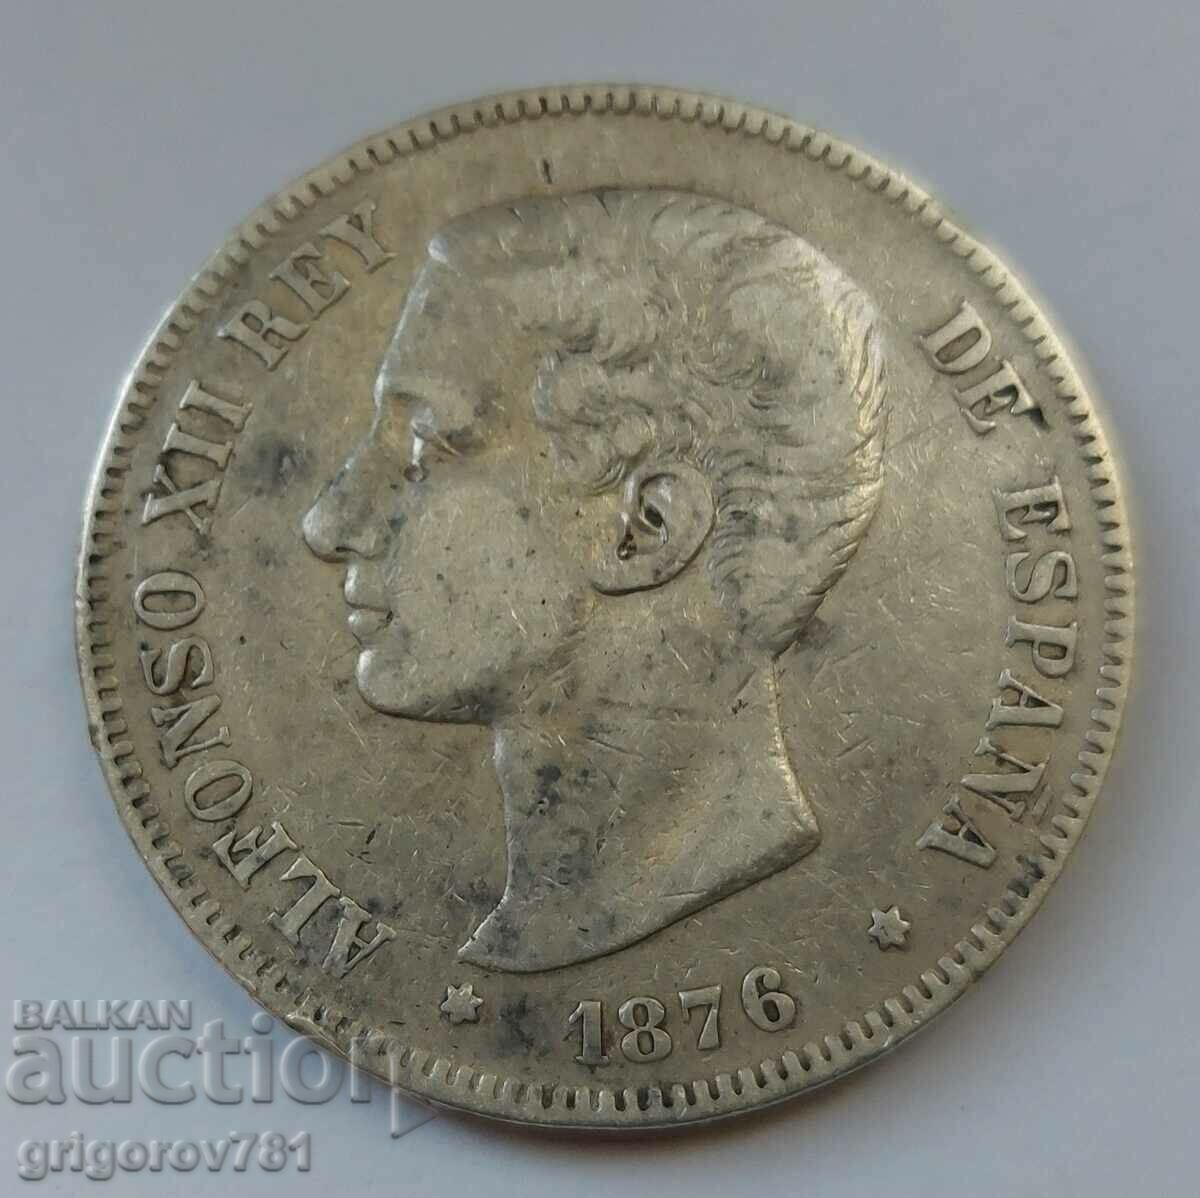 Ασημένιο 5 πεσέτες Ισπανία 1878 - ασημένιο νόμισμα